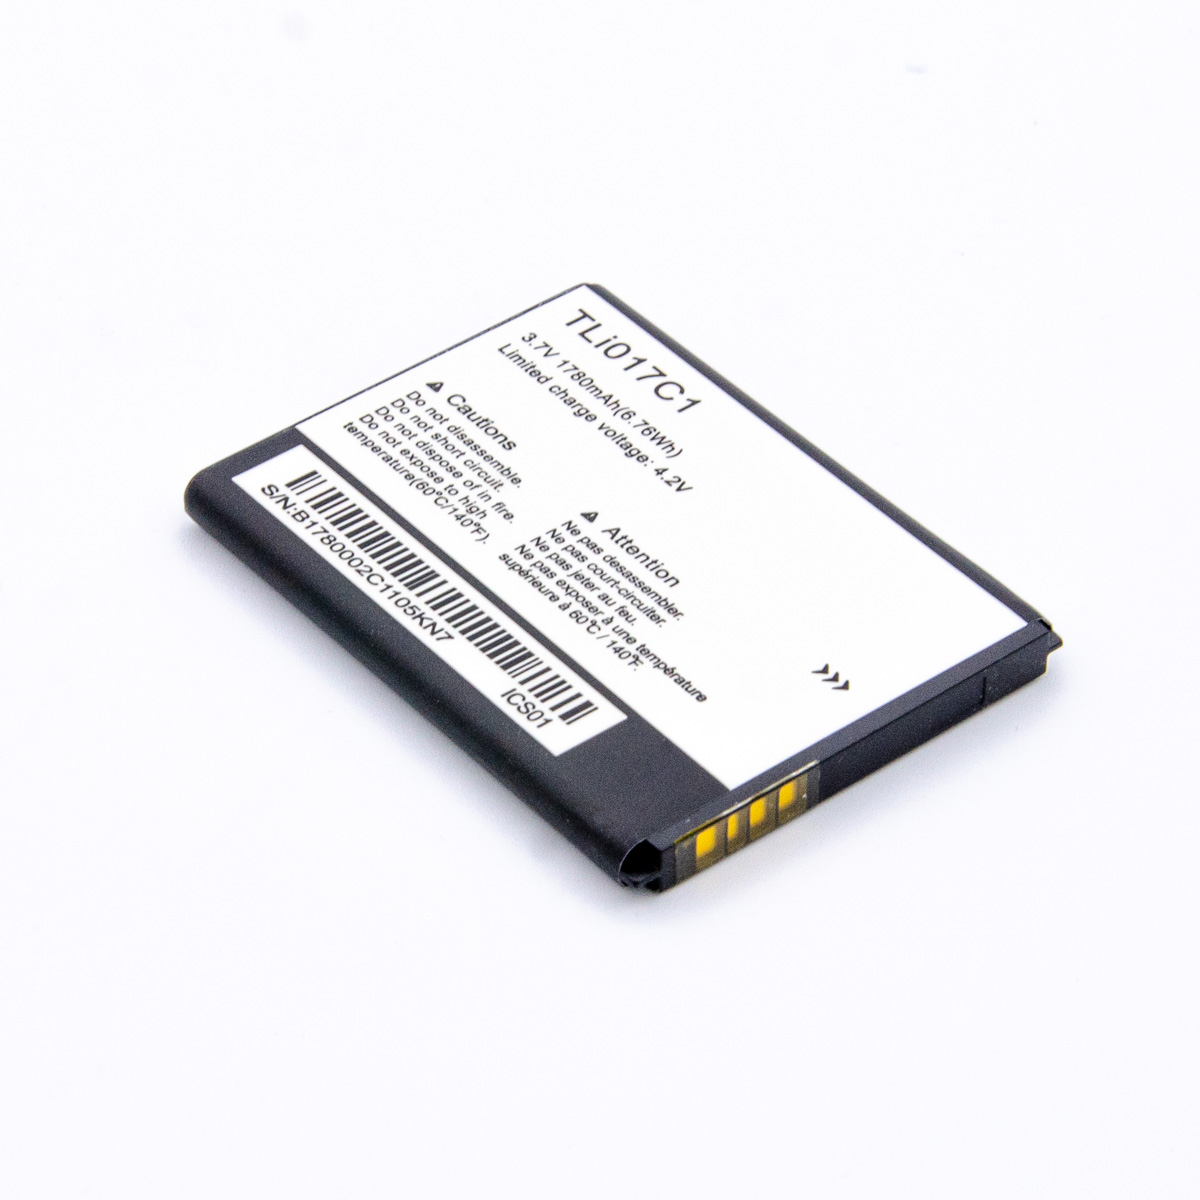 Baterija cell ot 5027/4060/5019 (pixi 3 4.5")